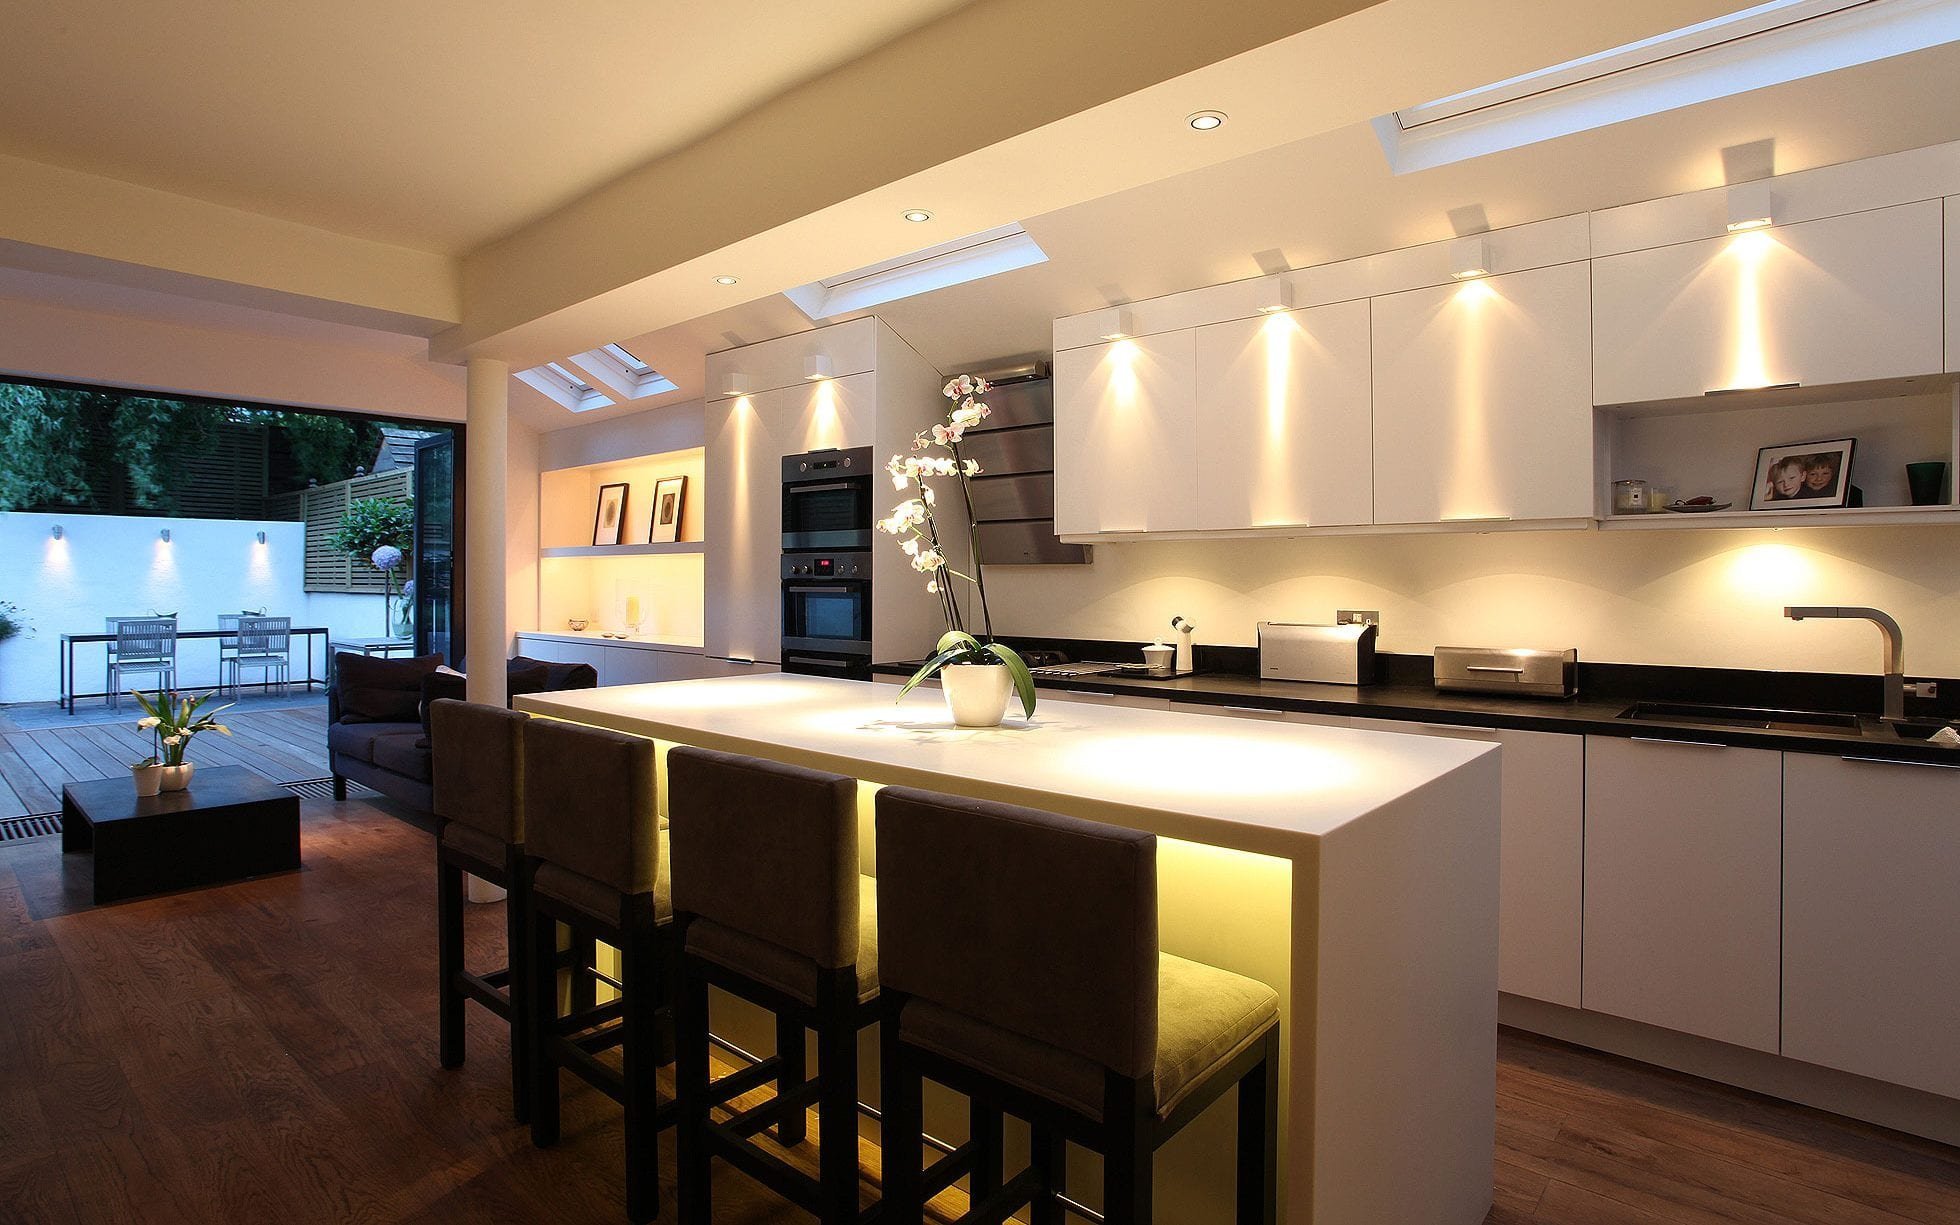 Iluminación leds en la cocina  House design, Dream house interior, Modern  led lighting